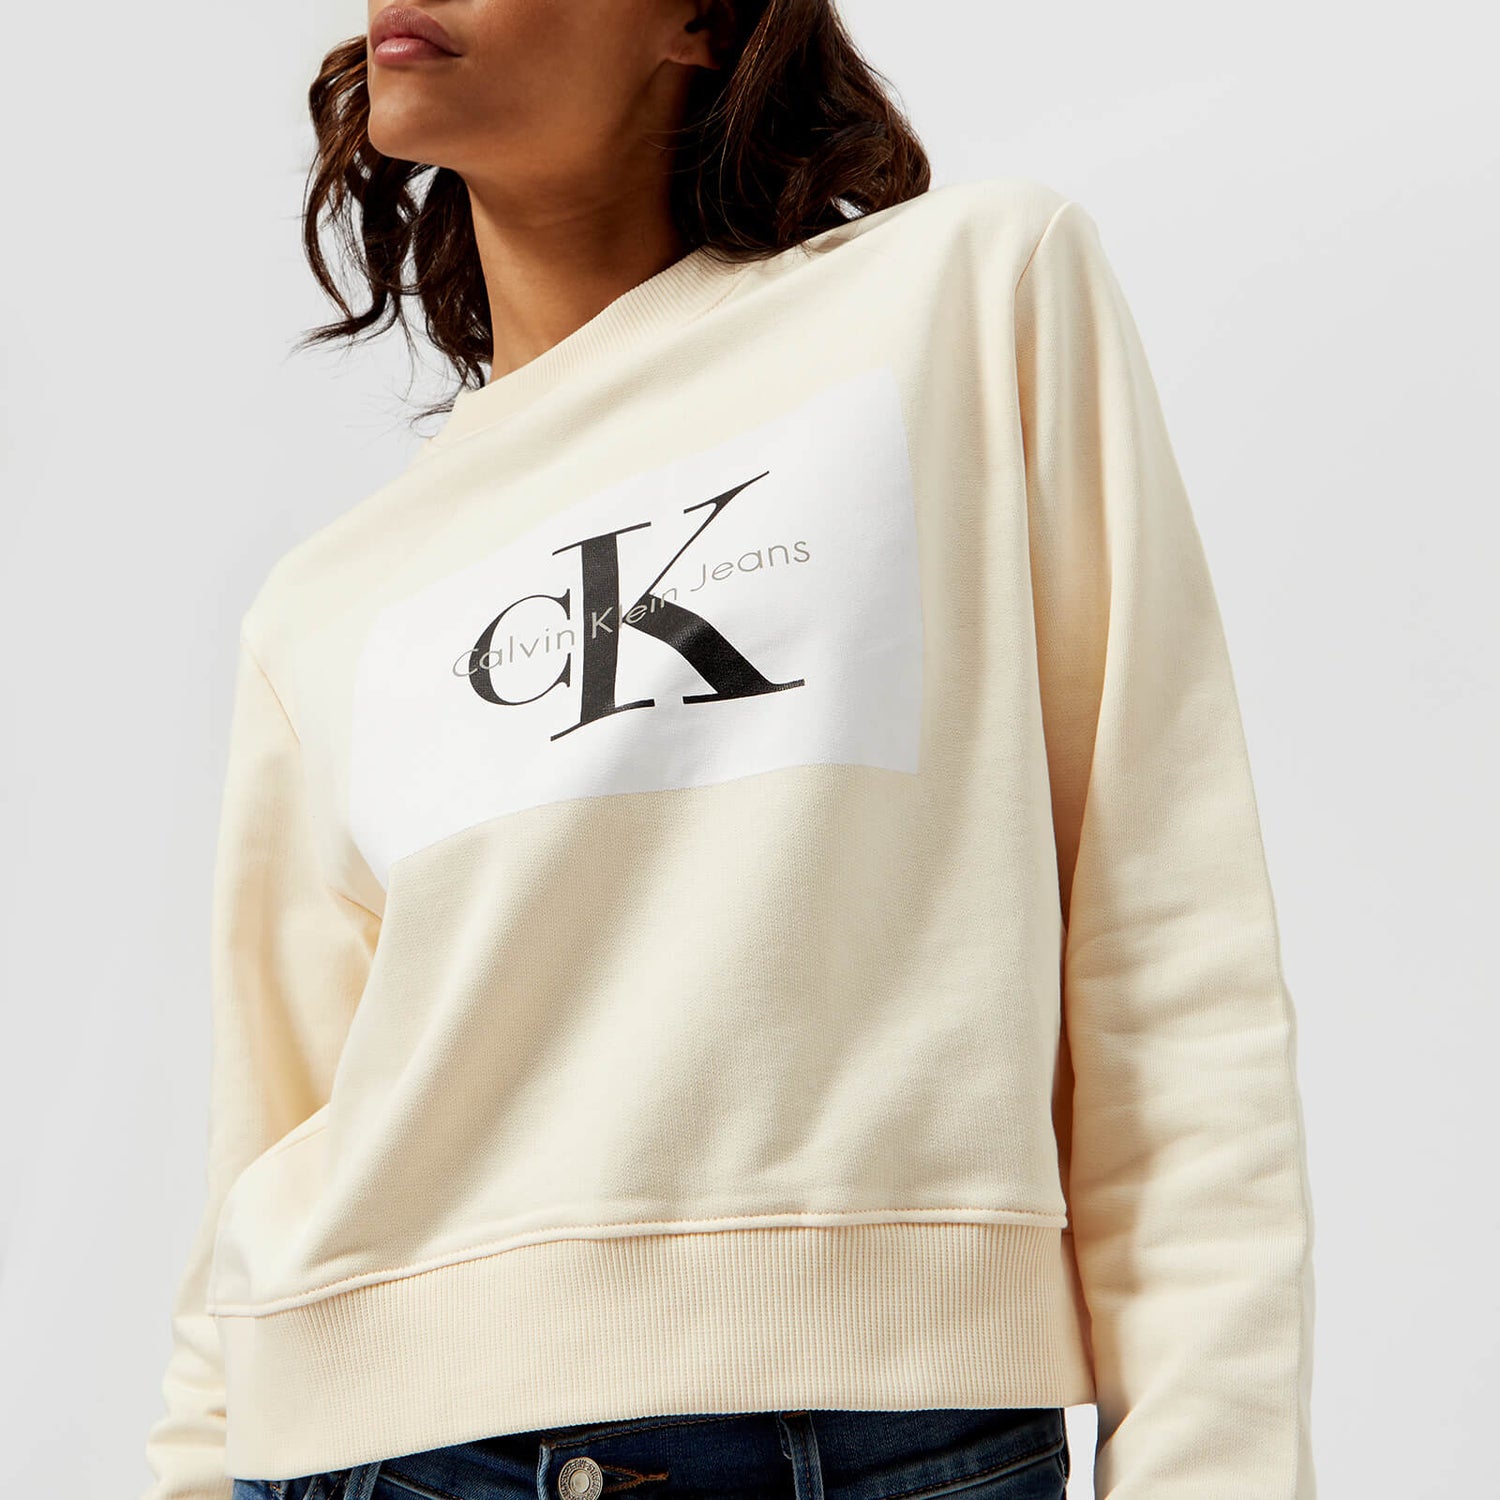 Klein Women's CK True Icon Sweatshirt - Pearled Ivory